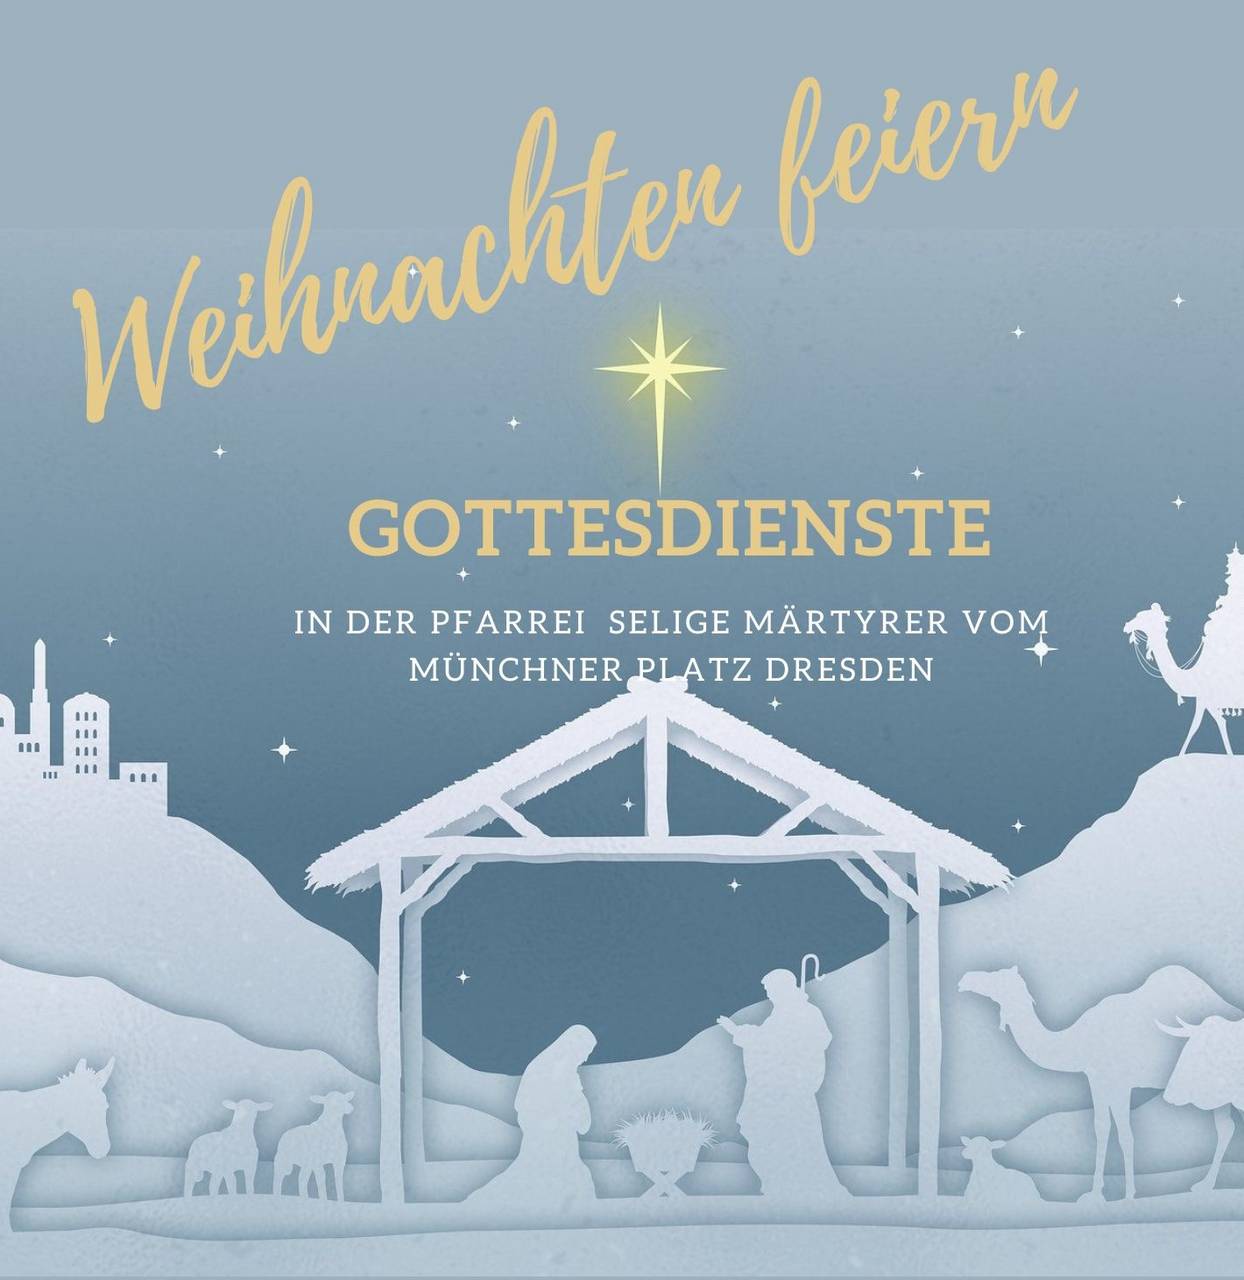 m_white and gold bethlehem church invitation-1 | Kath. Pfarrei Selige Märtyrer vom Münchner Platz - Aktuelles St. Petrus - Weihnachten in der Pfarrei